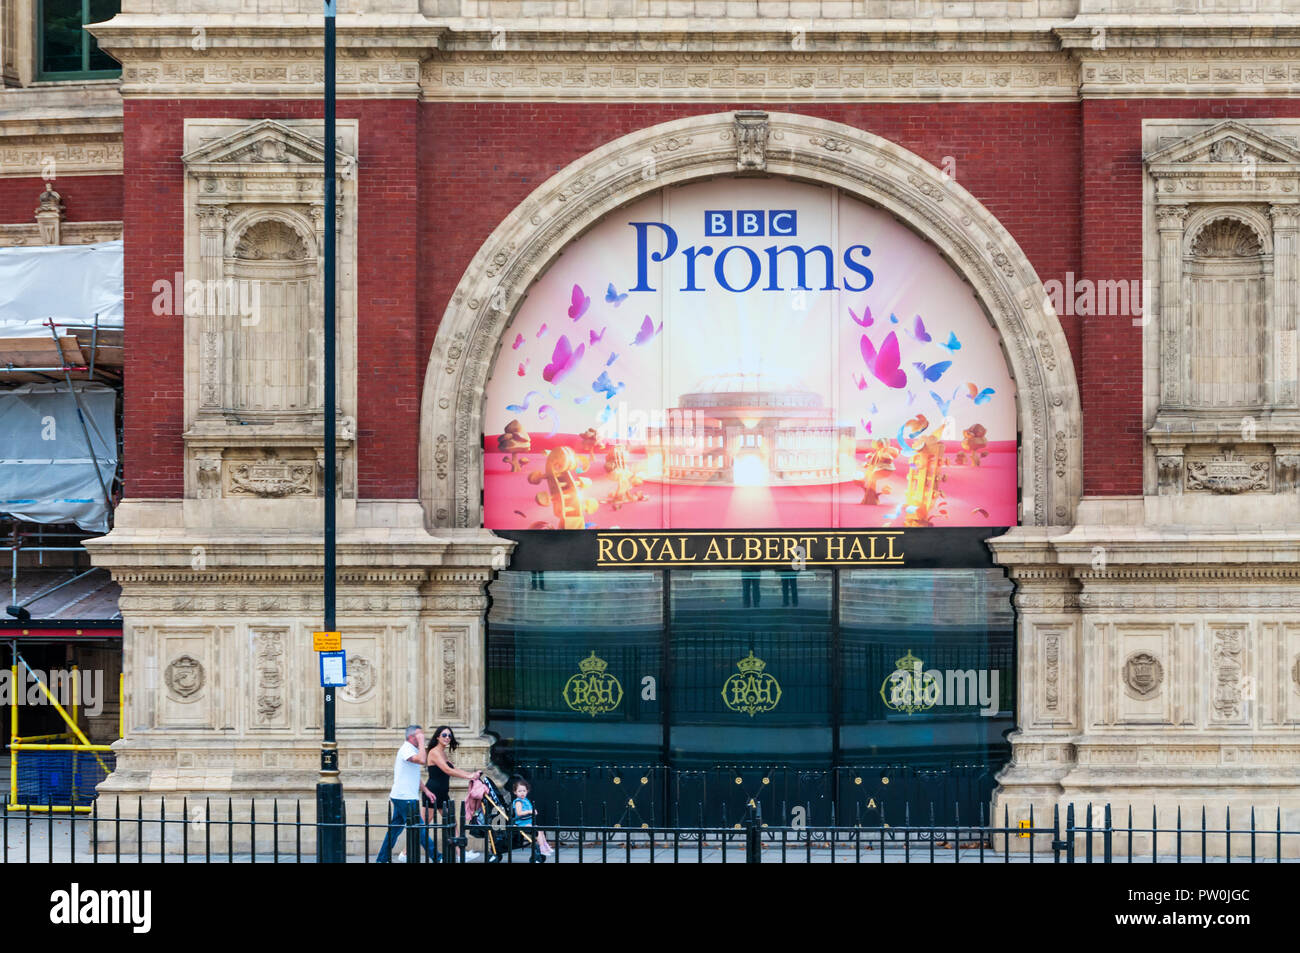 Segno per la BBC Proms su un ingresso al Royal Albert Hall. Foto Stock